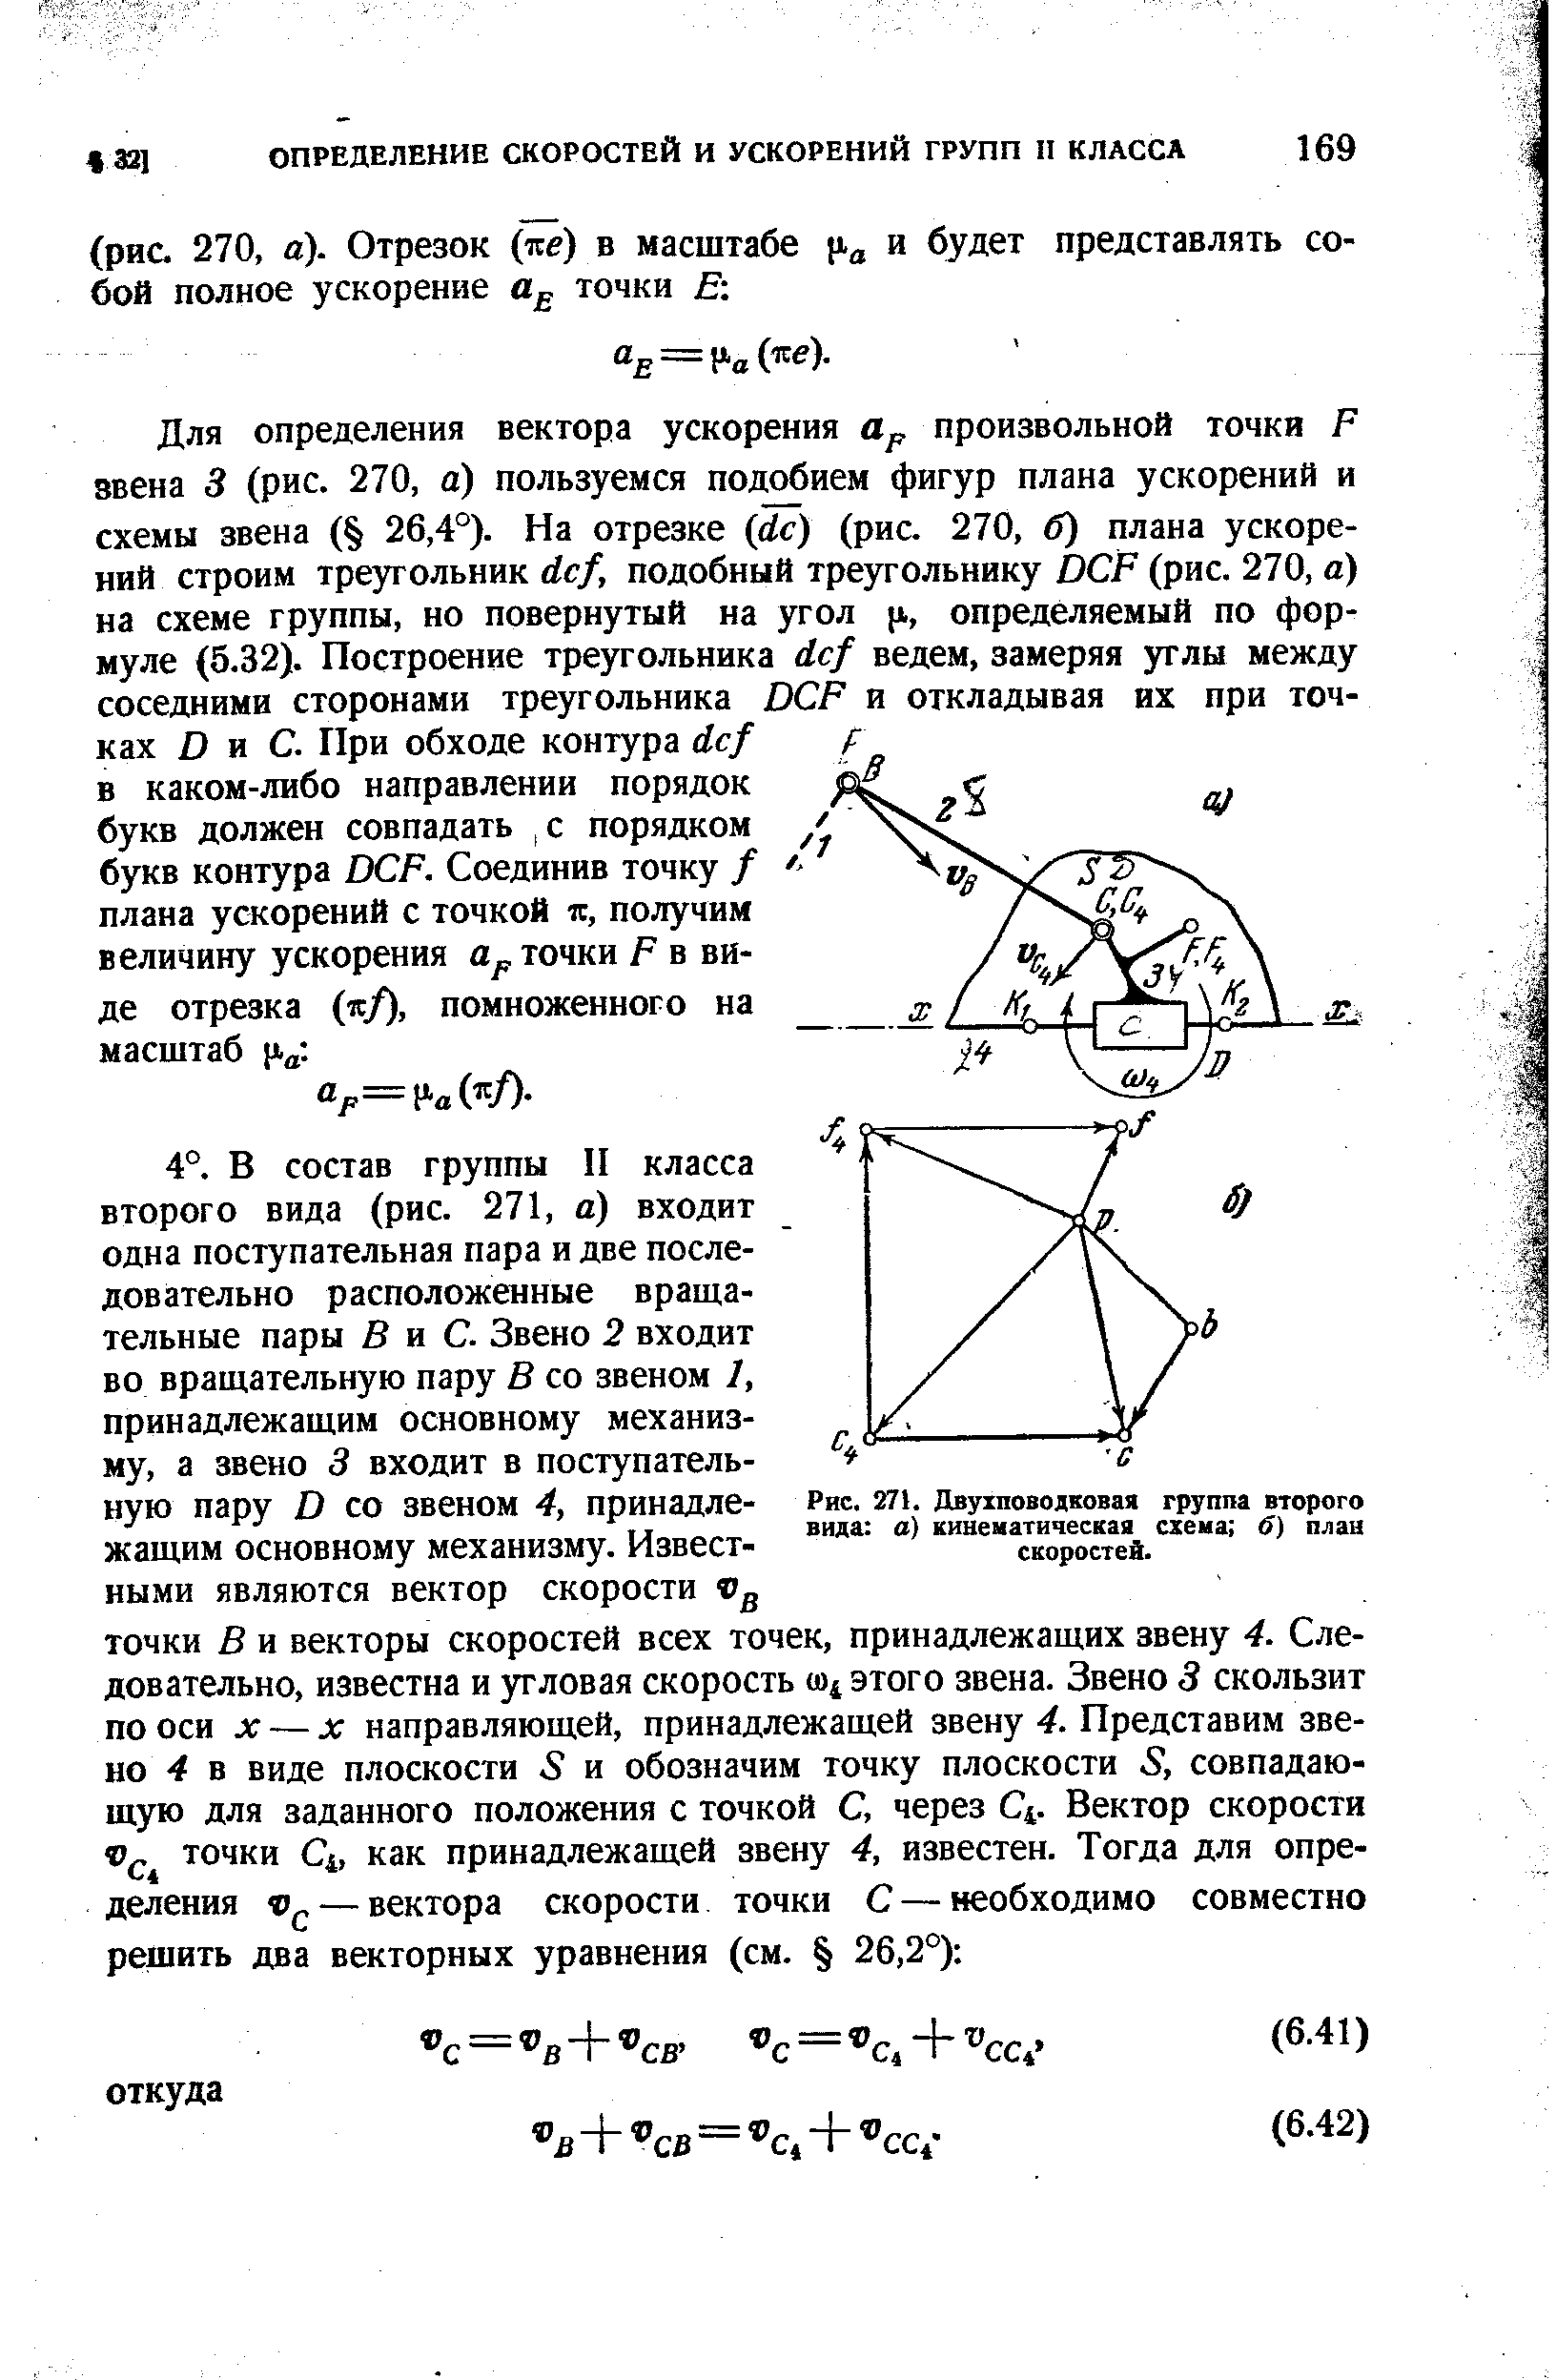 Рис. 271. Двухповодковая группа второго вида о) кинематическая схеиа 6) план скоростей.
